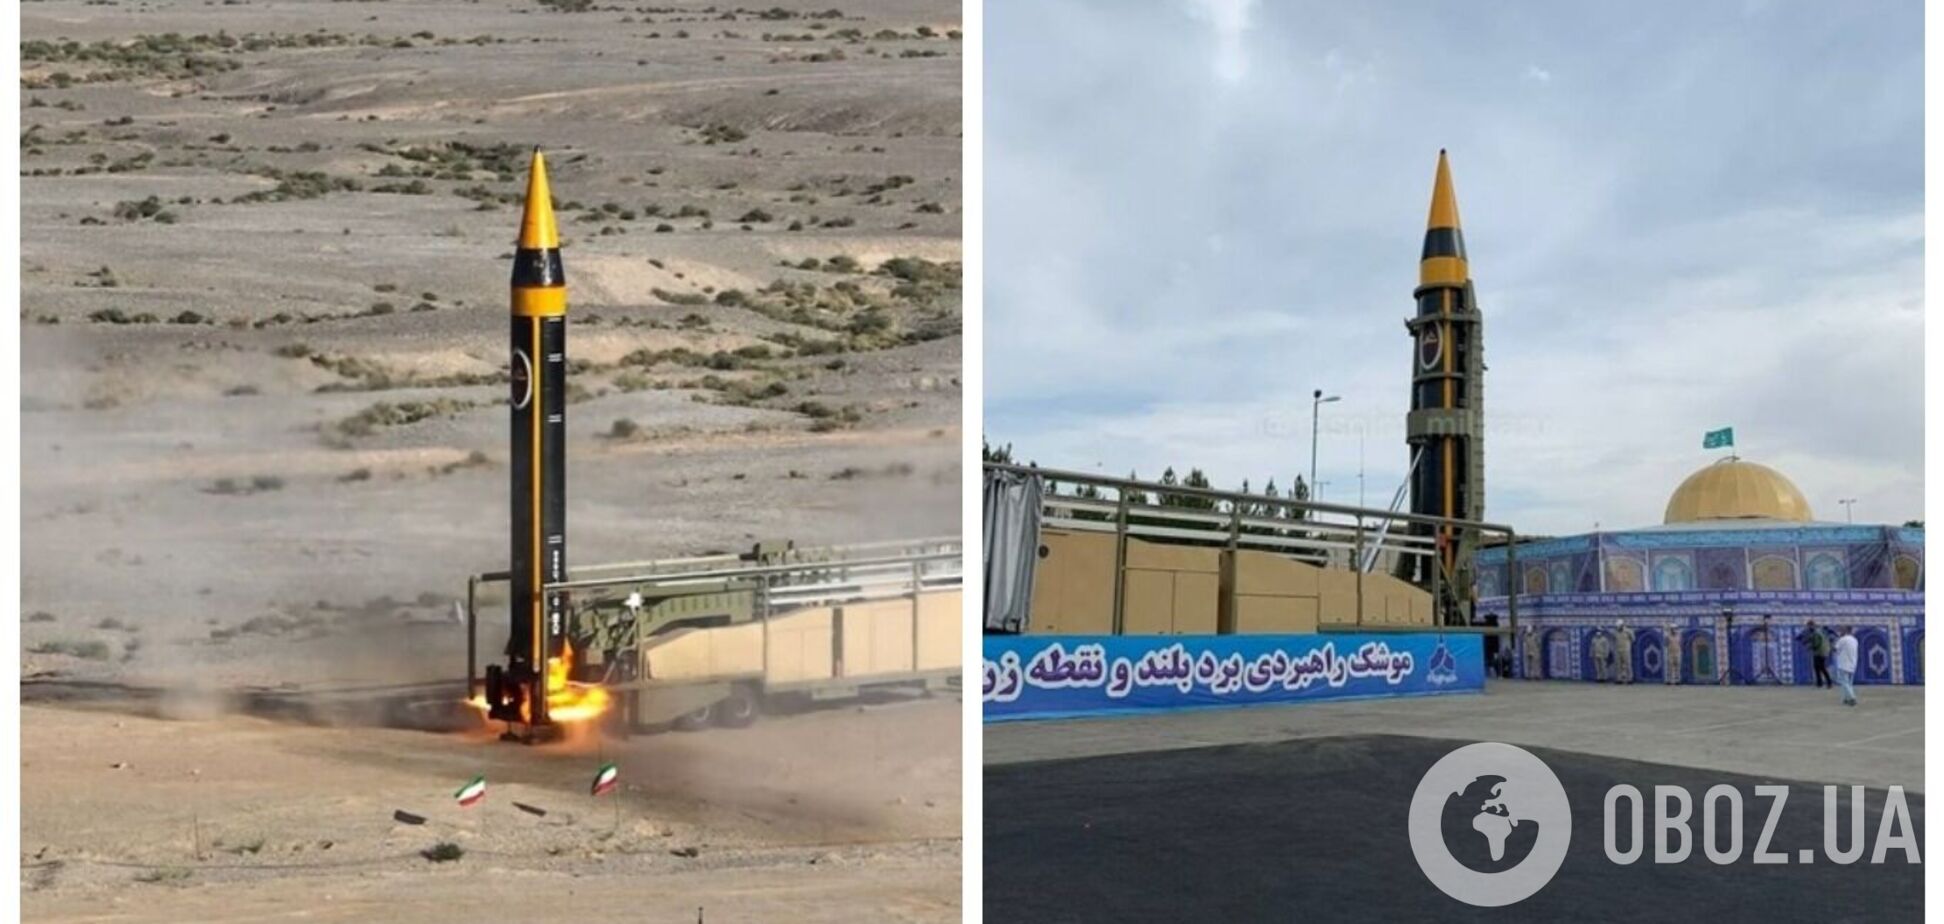 Іран представив нову балістичну ракету 'Хайбар' із дальністю 2000 км: що відомо про розробку. Відео